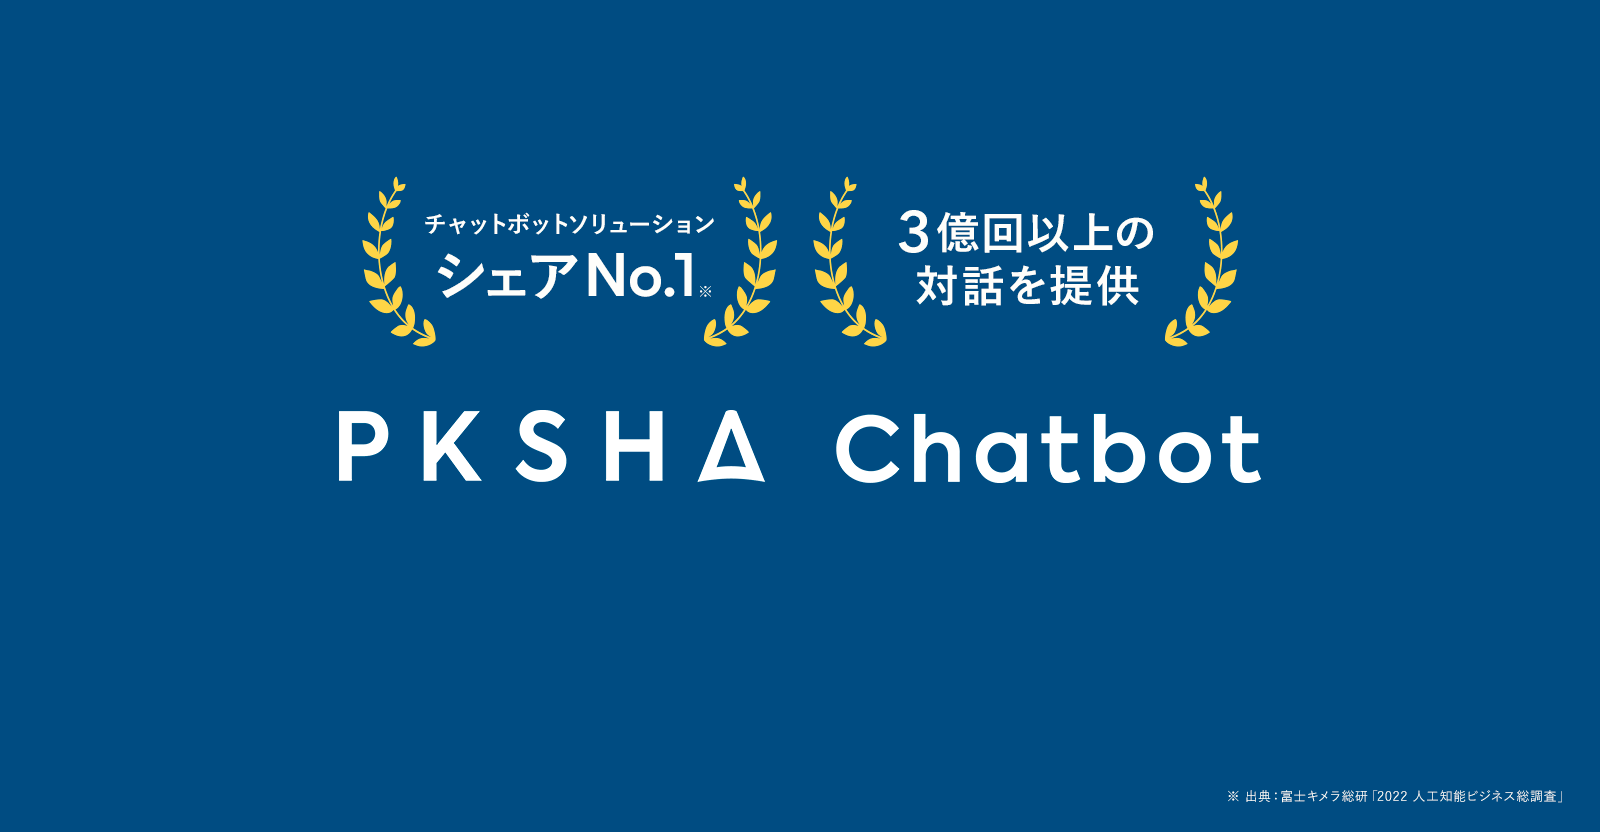 PKSHA Chatbot